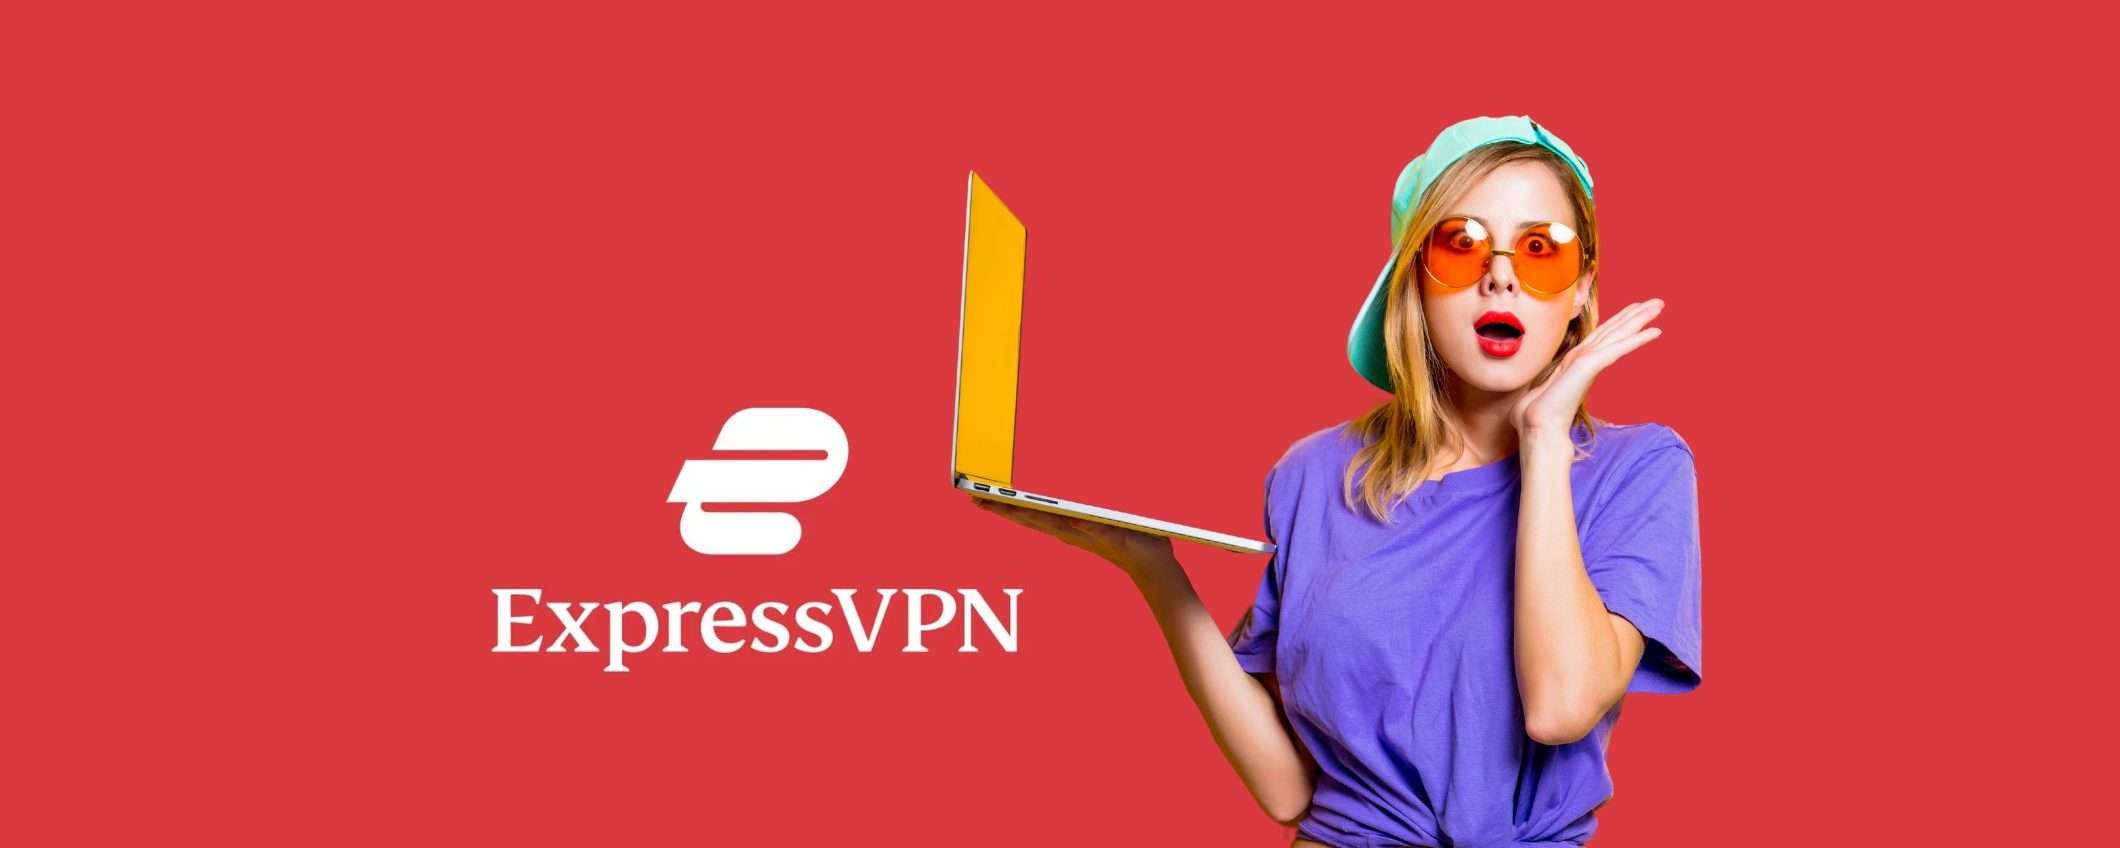 ExpressVPN: sconto del 49% sulla VPN più veloce d’Italia